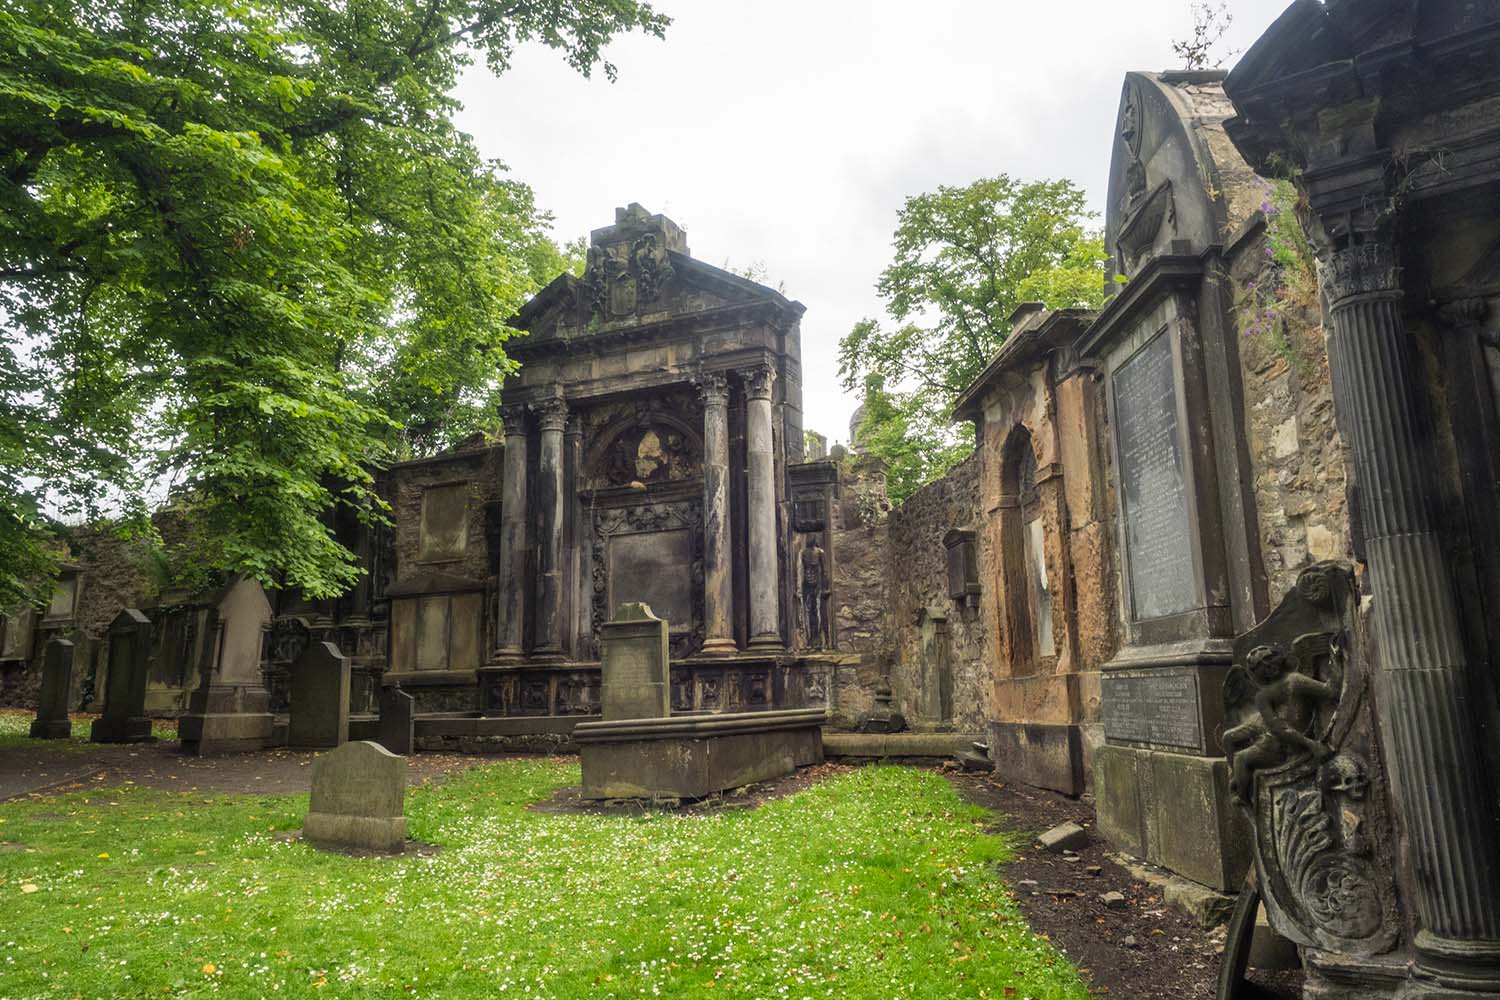 Graves in Greyfriars Kirk in Edinburgh